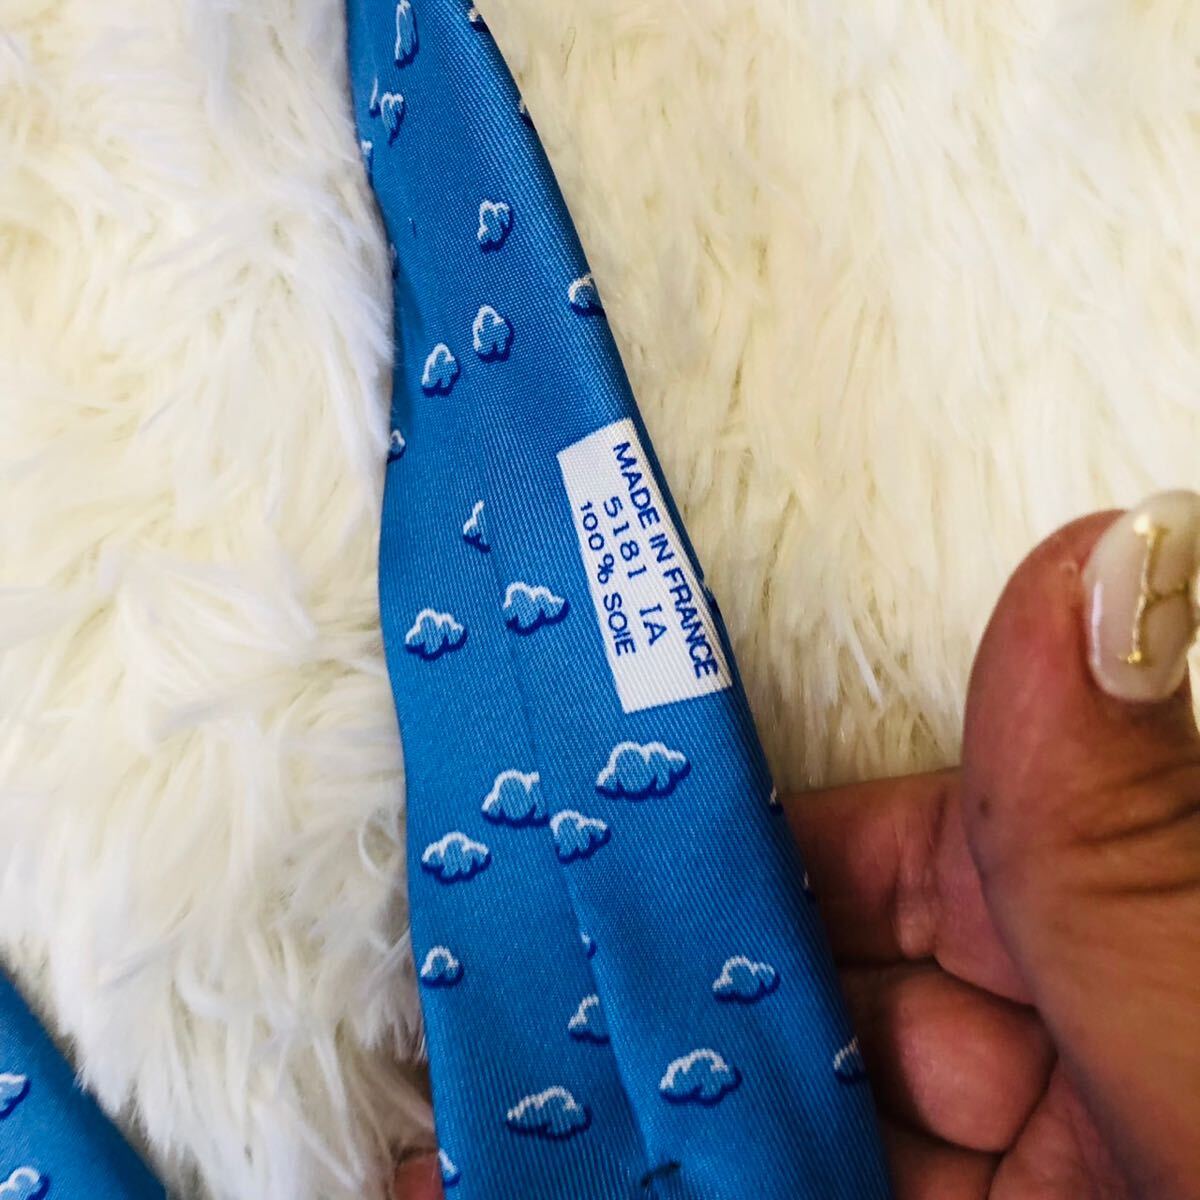 HERMES Hermes мужской мужчина джентльмен галстук бренд галстук общий рисунок . пустой синий blue стандартный цвет популярный свадьба бизнес прекрасный товар ..9.3cm